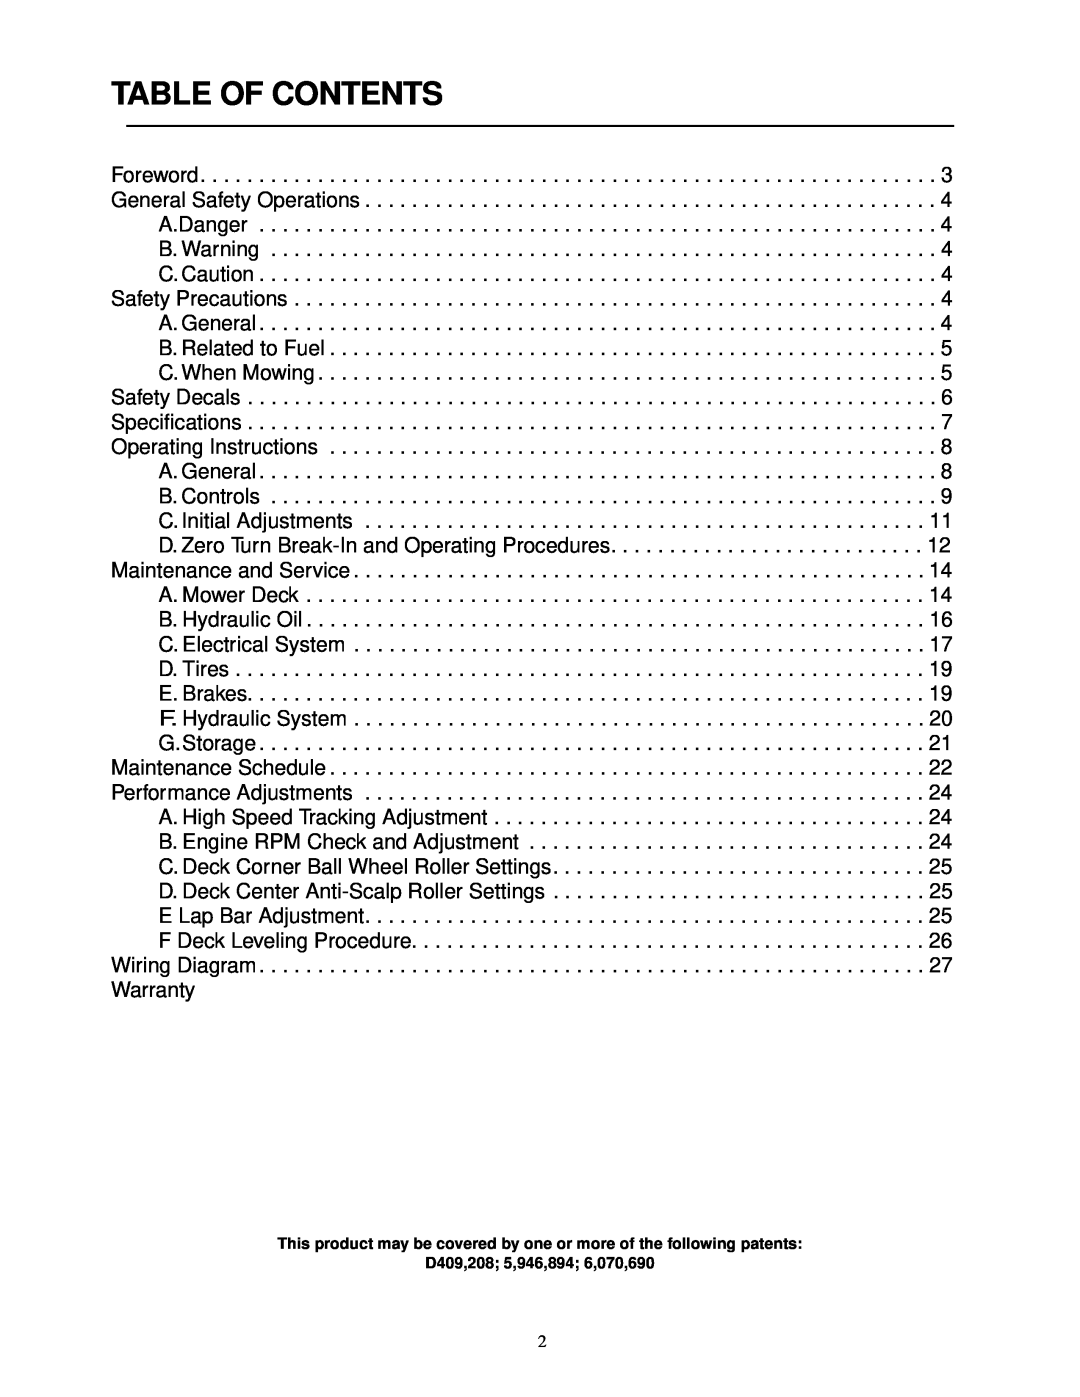 Cub Cadet 18HP service manual Table Of Contents, D409,208 5,946,894 6,070,690 